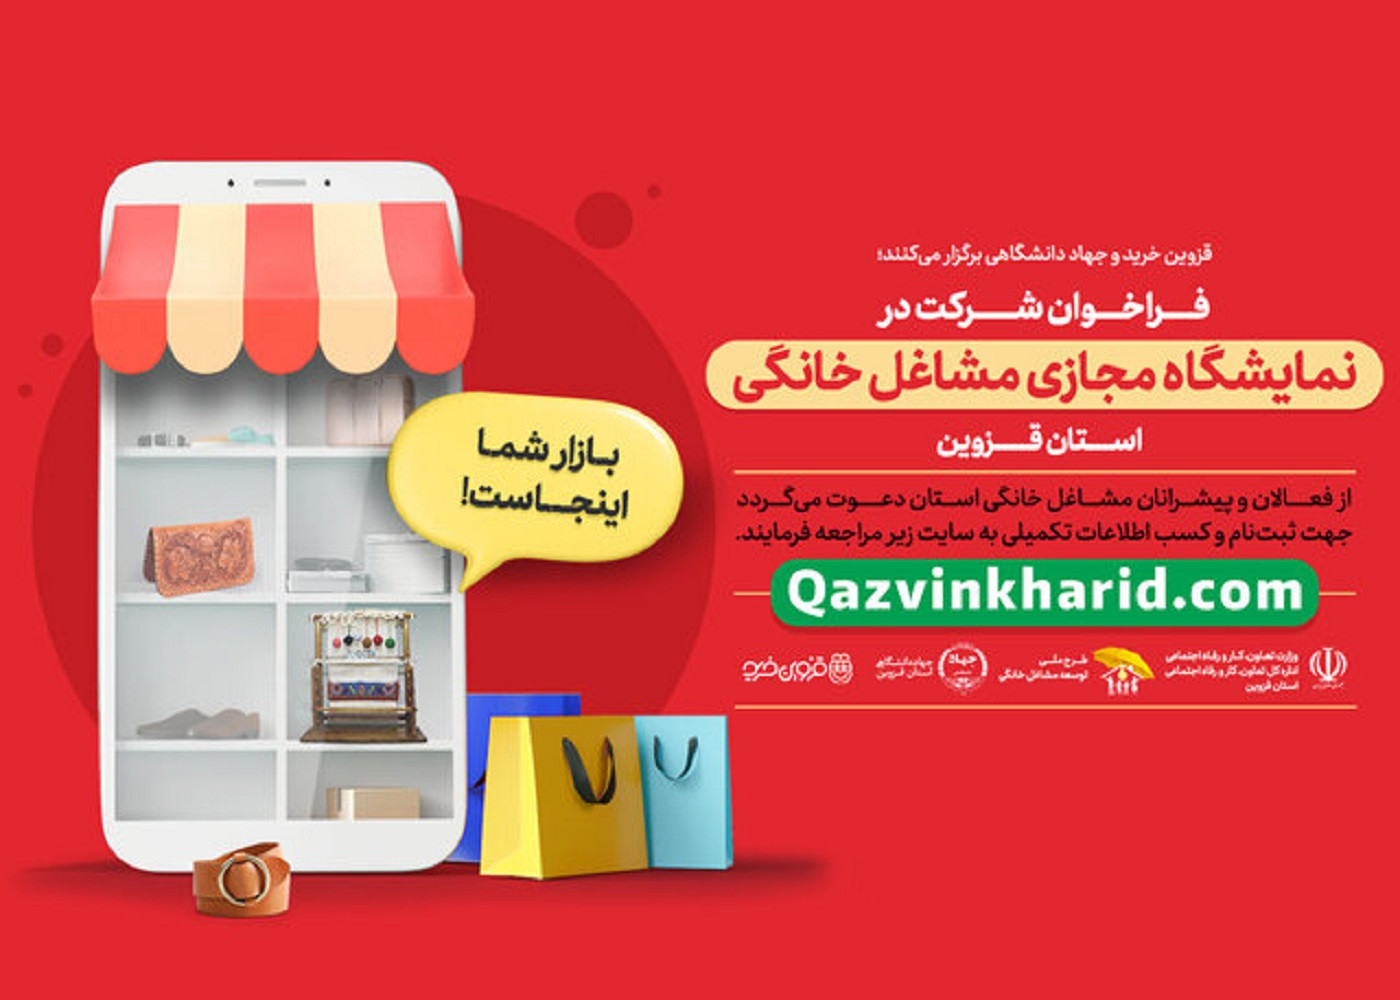 به گزارش خبرگزاری ایسنا قزوین؛ نمایشگاه مجازی محصولات خانگی در قزوین برگزار می‌شود